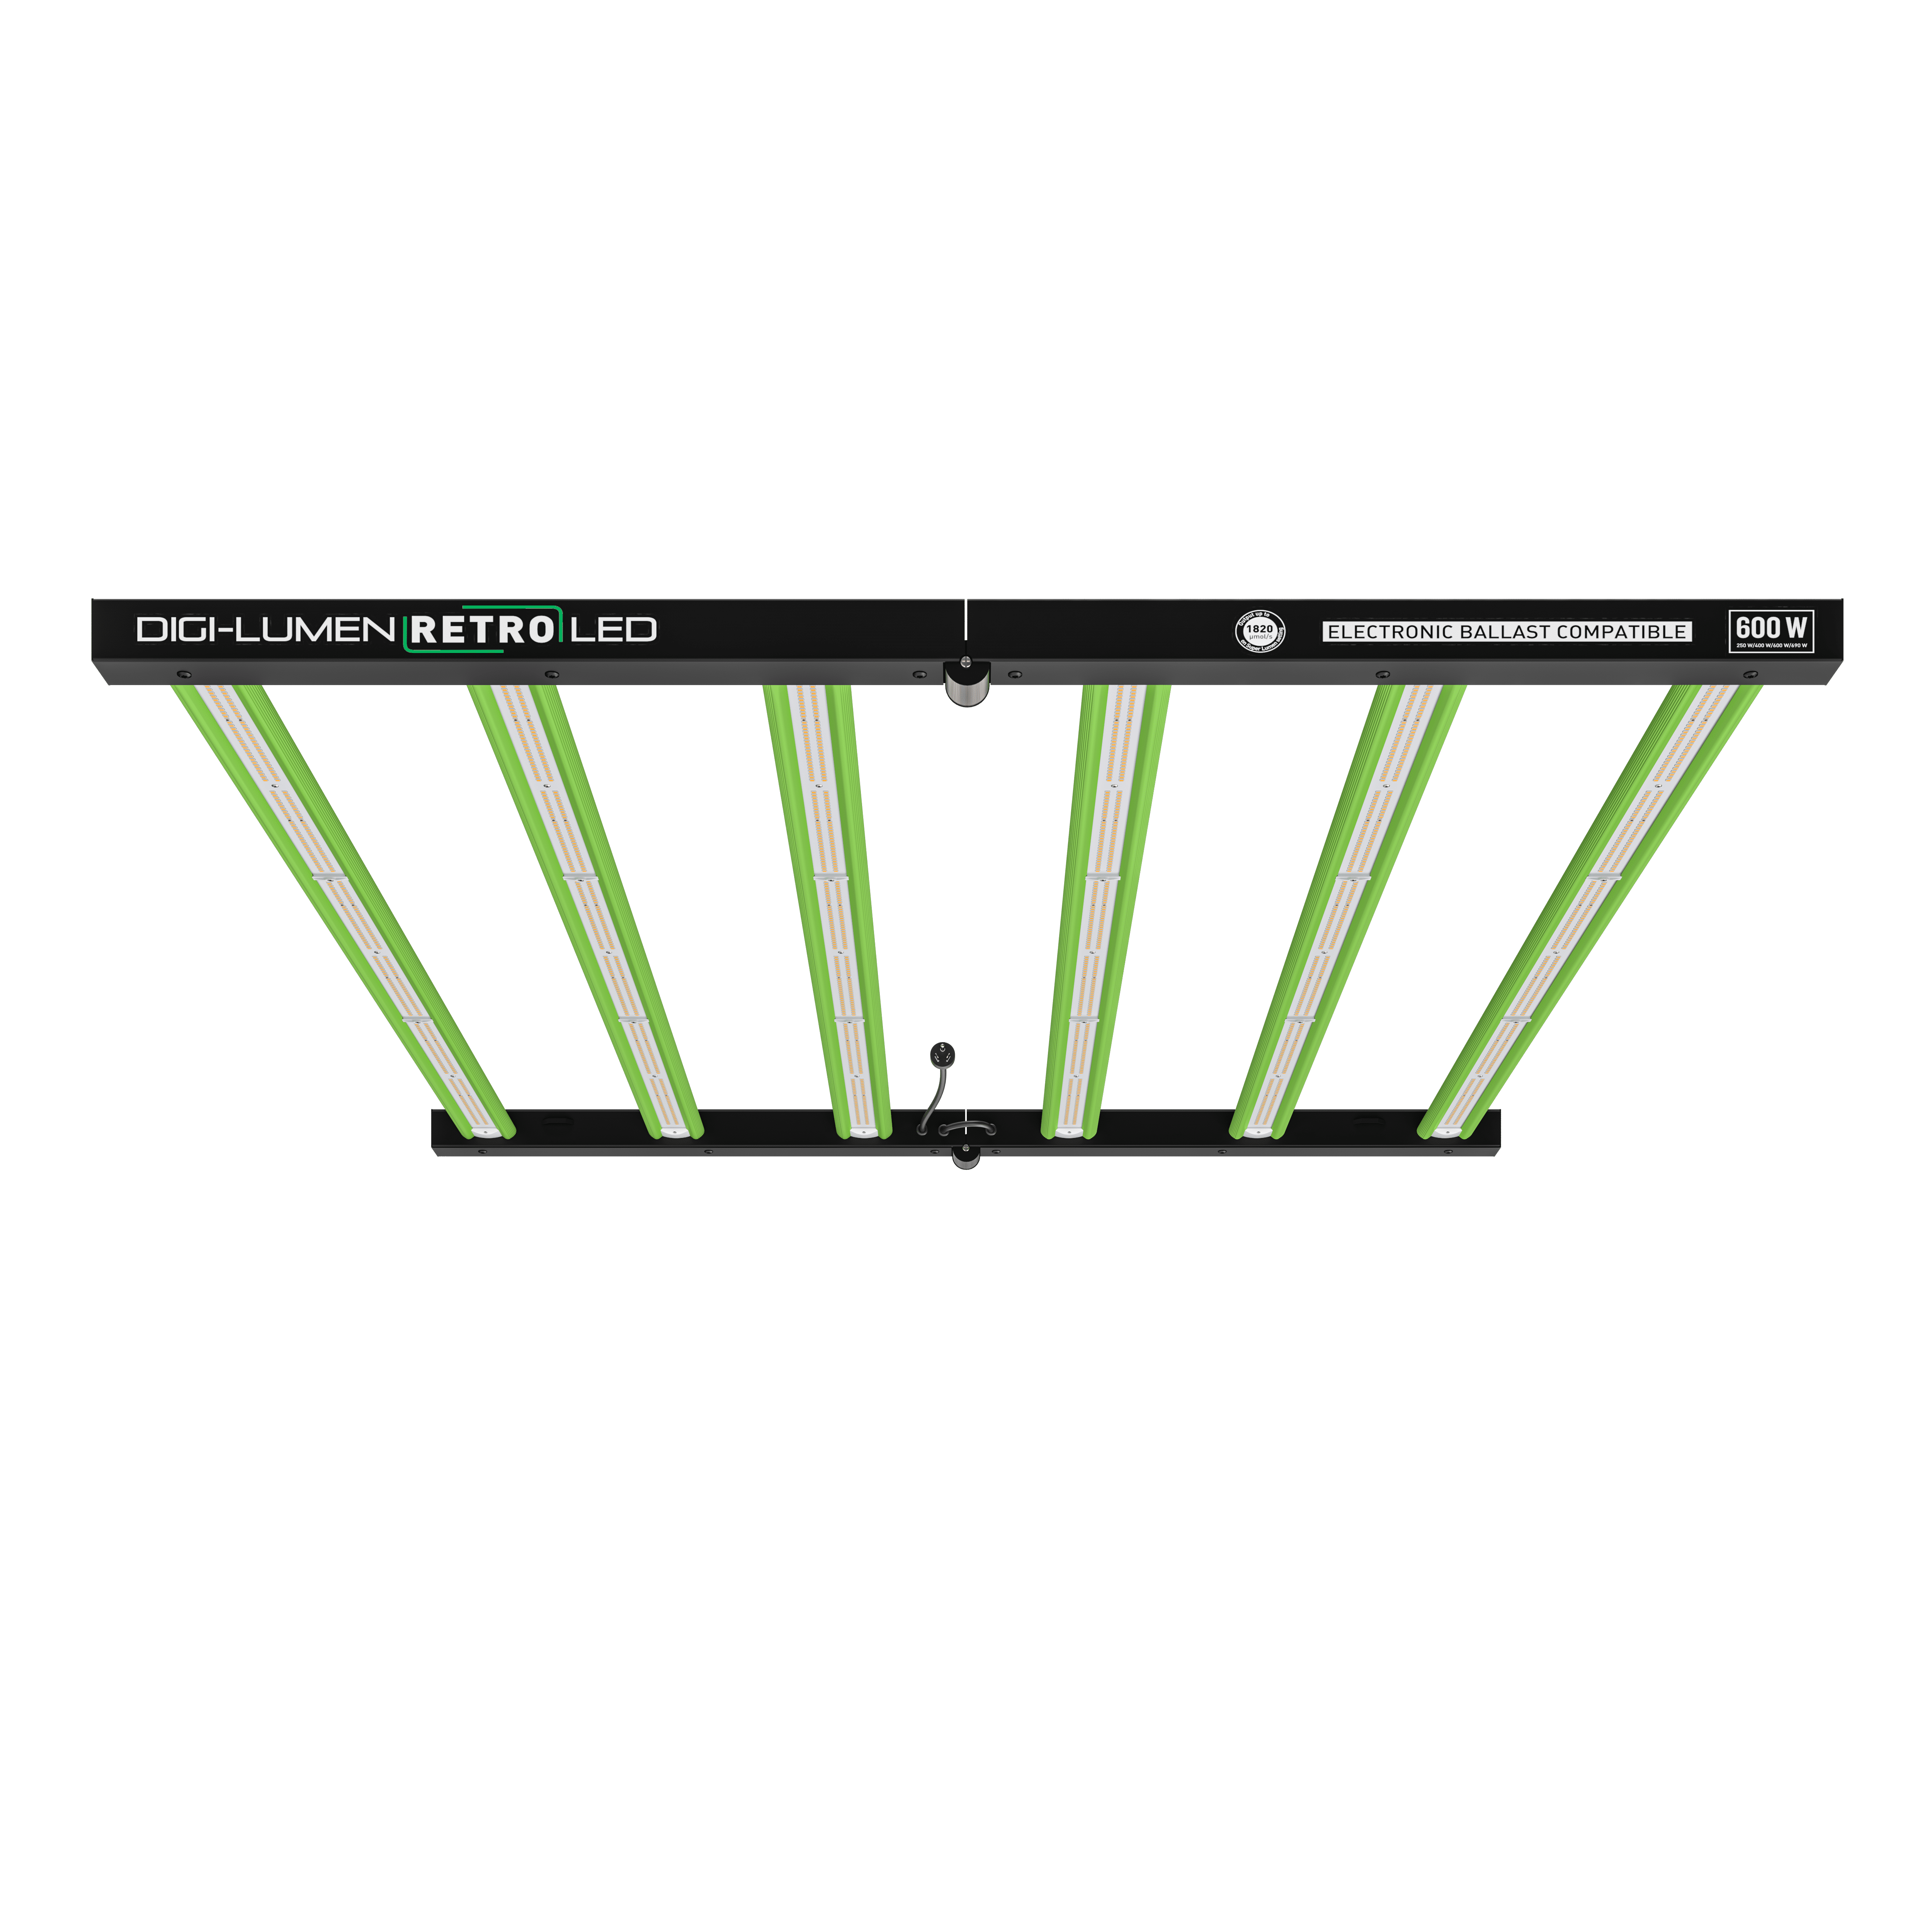 Digi-Lumen LED Array - includes DL600BPWM ballast